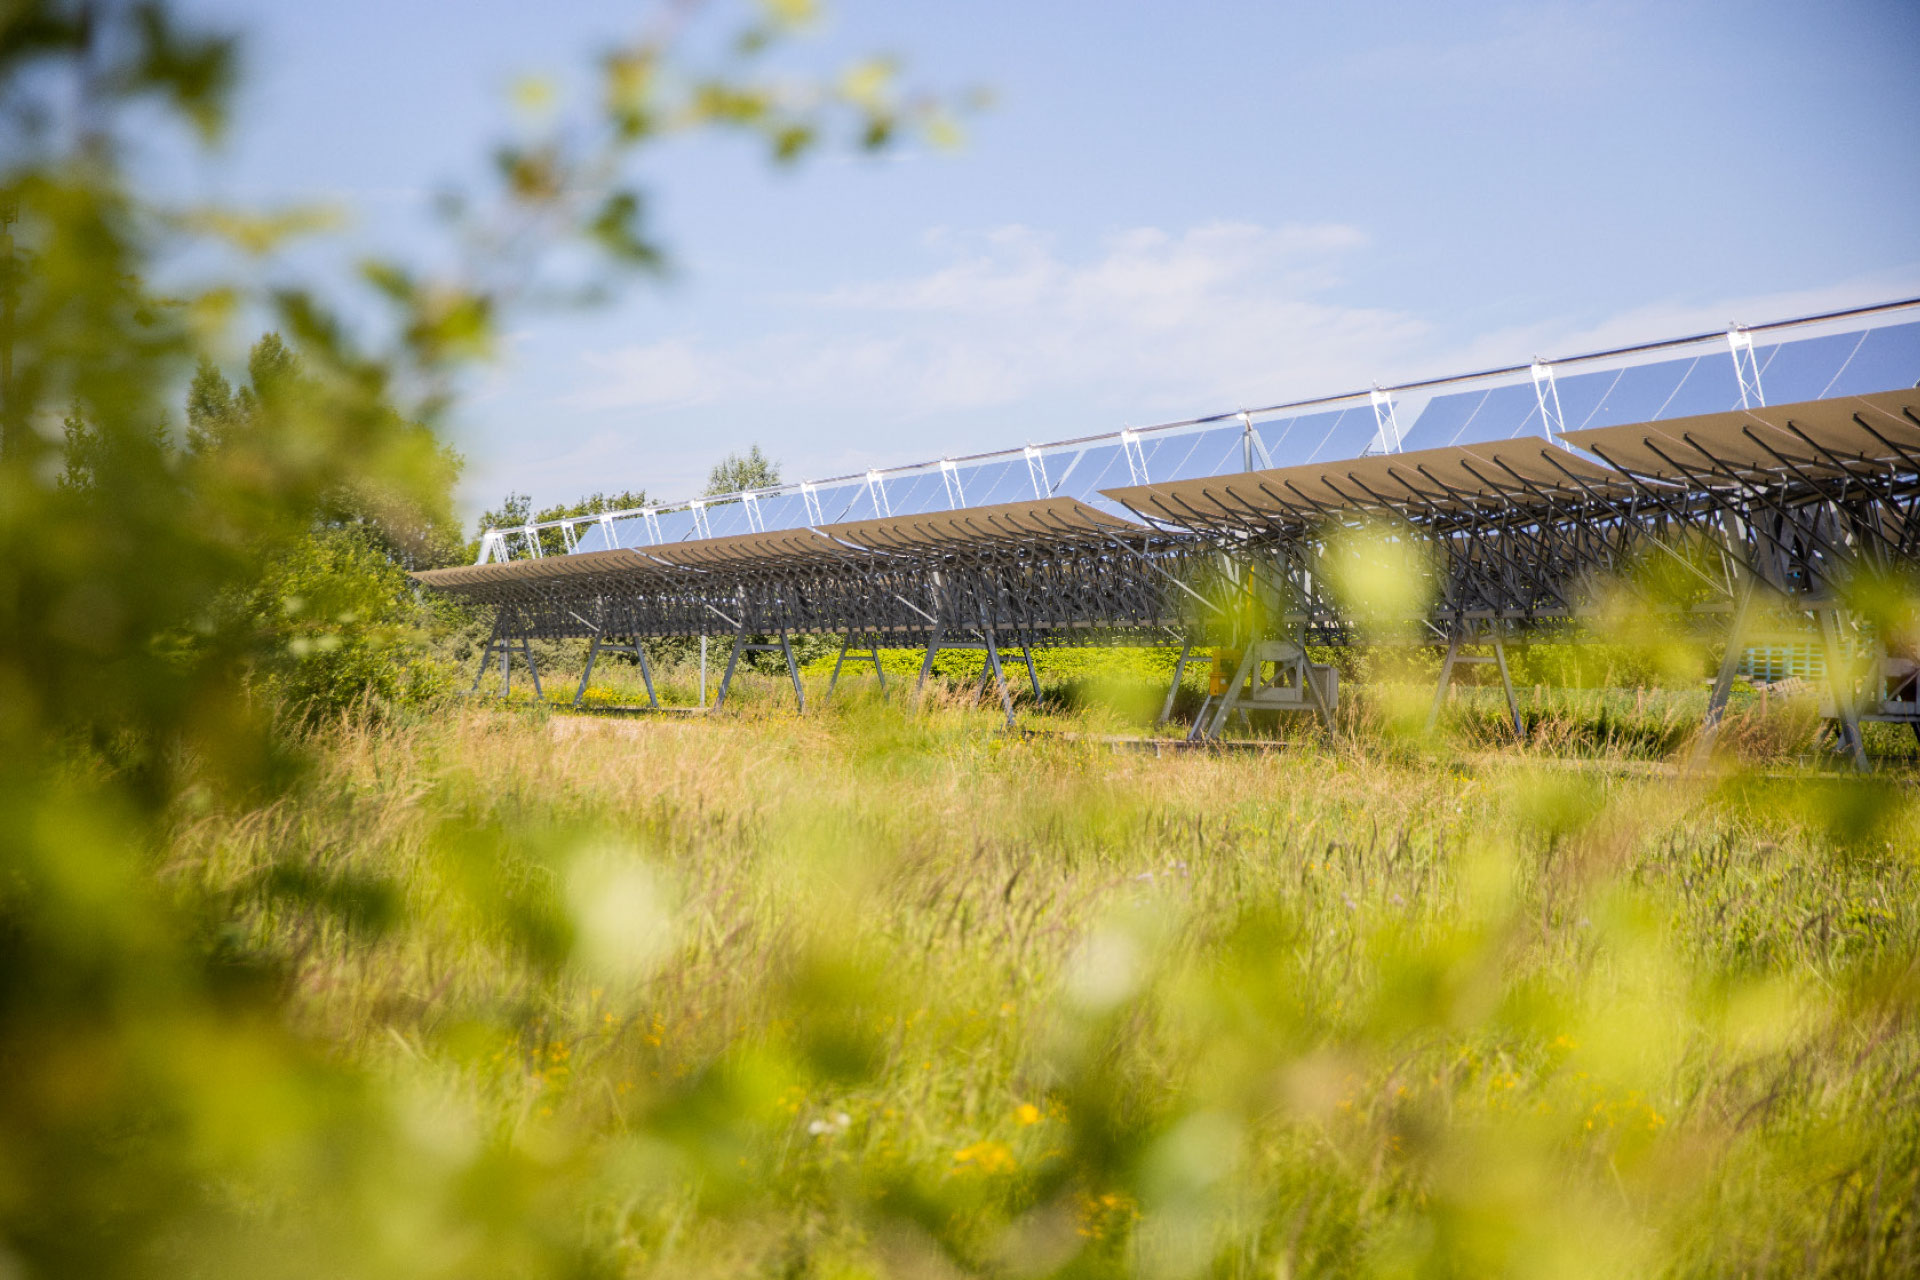 Solarlite公司在比利时奥斯坦德建造的聚光太阳能发电站及其位于安特卫普港的姊妹发电站是欧洲工艺领域的第一个聚光太阳能热发电场。 